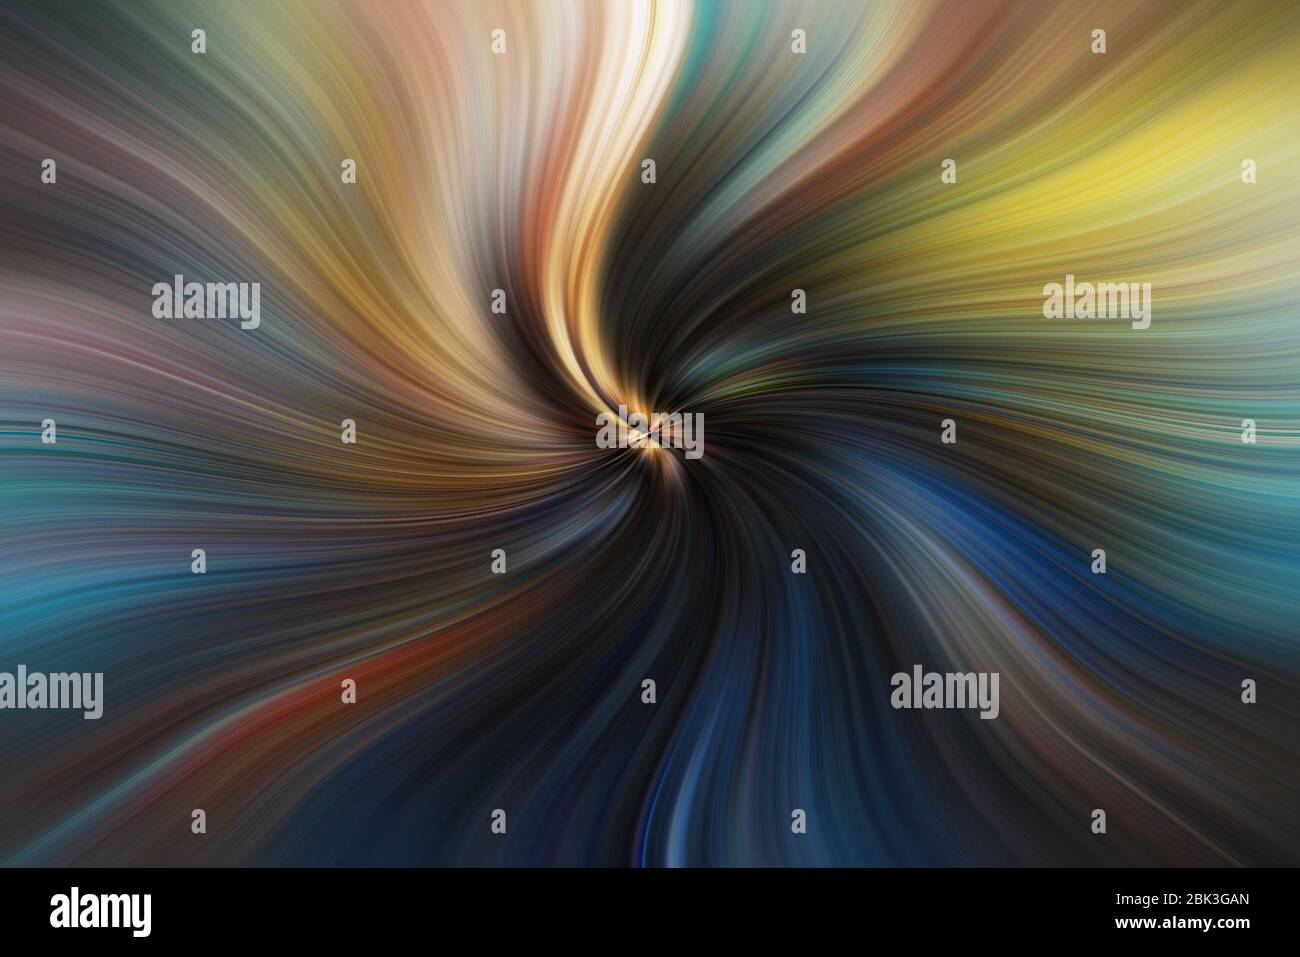 Immagine astratta composta da linee colorate che creano spirali Foto Stock